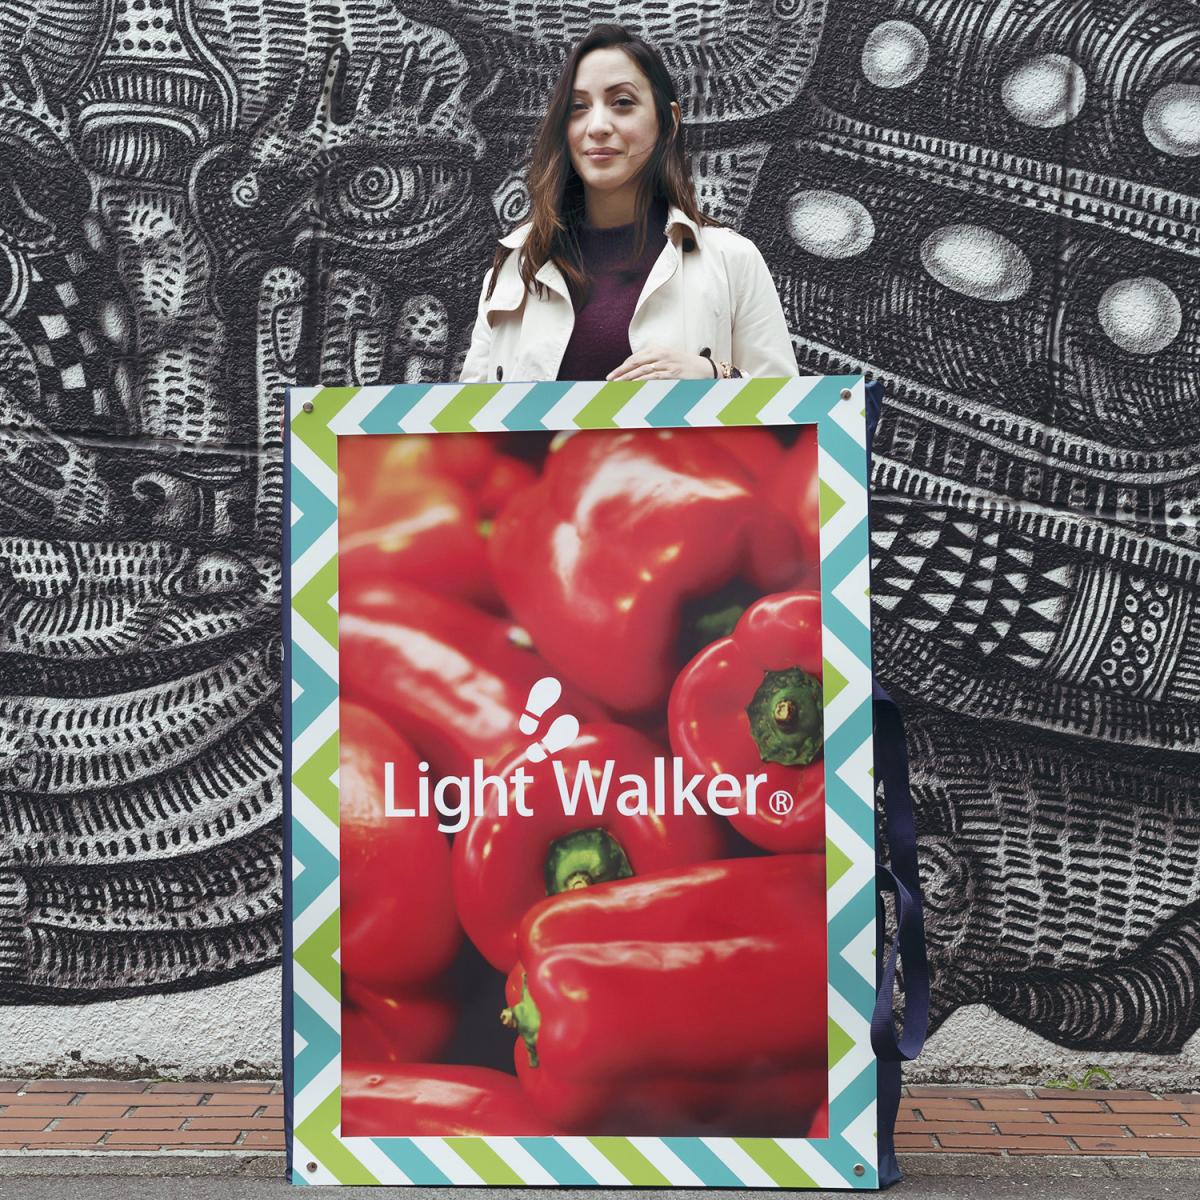 Light Walker,Light Walker is a ultra-light portable sign board with a LED backlit film poster.